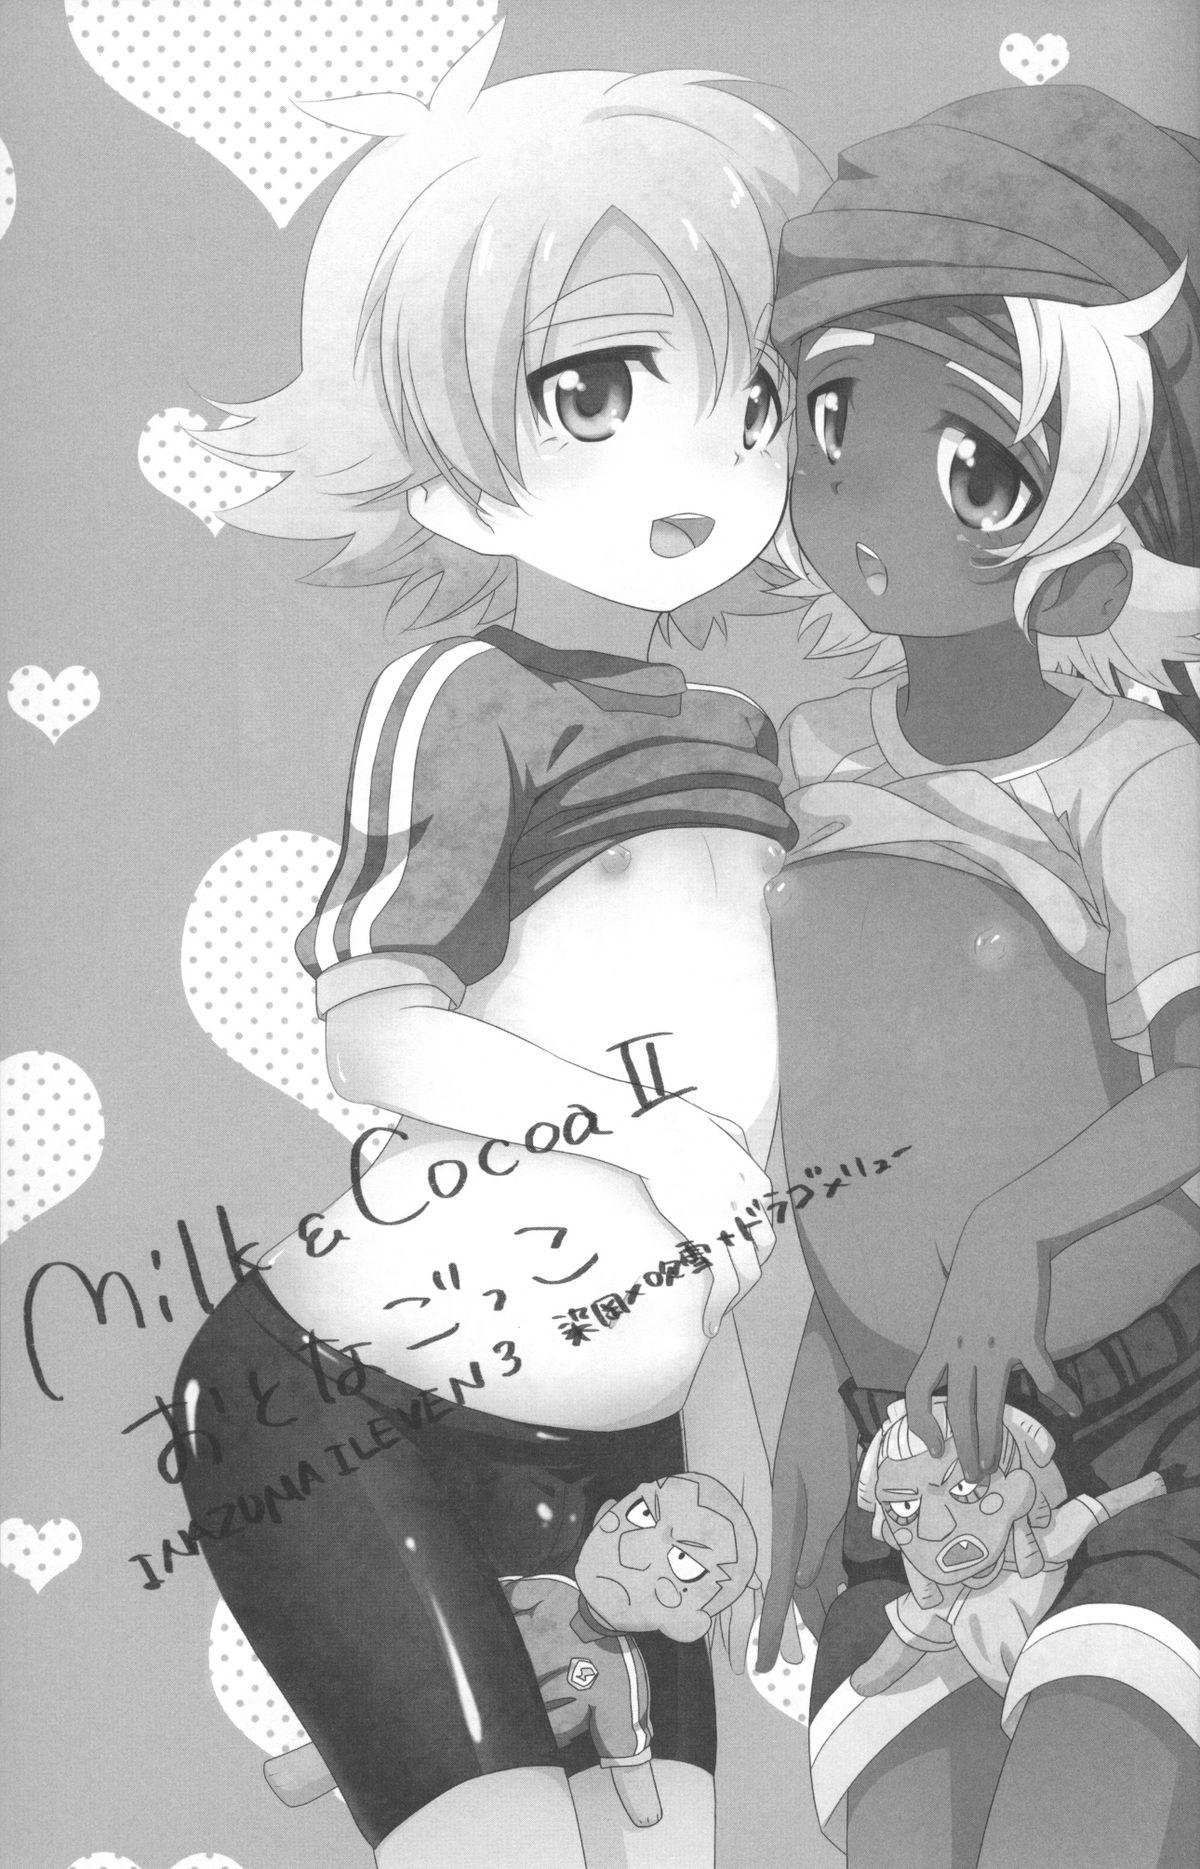 Otona Gocco - Milk & Cocoa 2 1